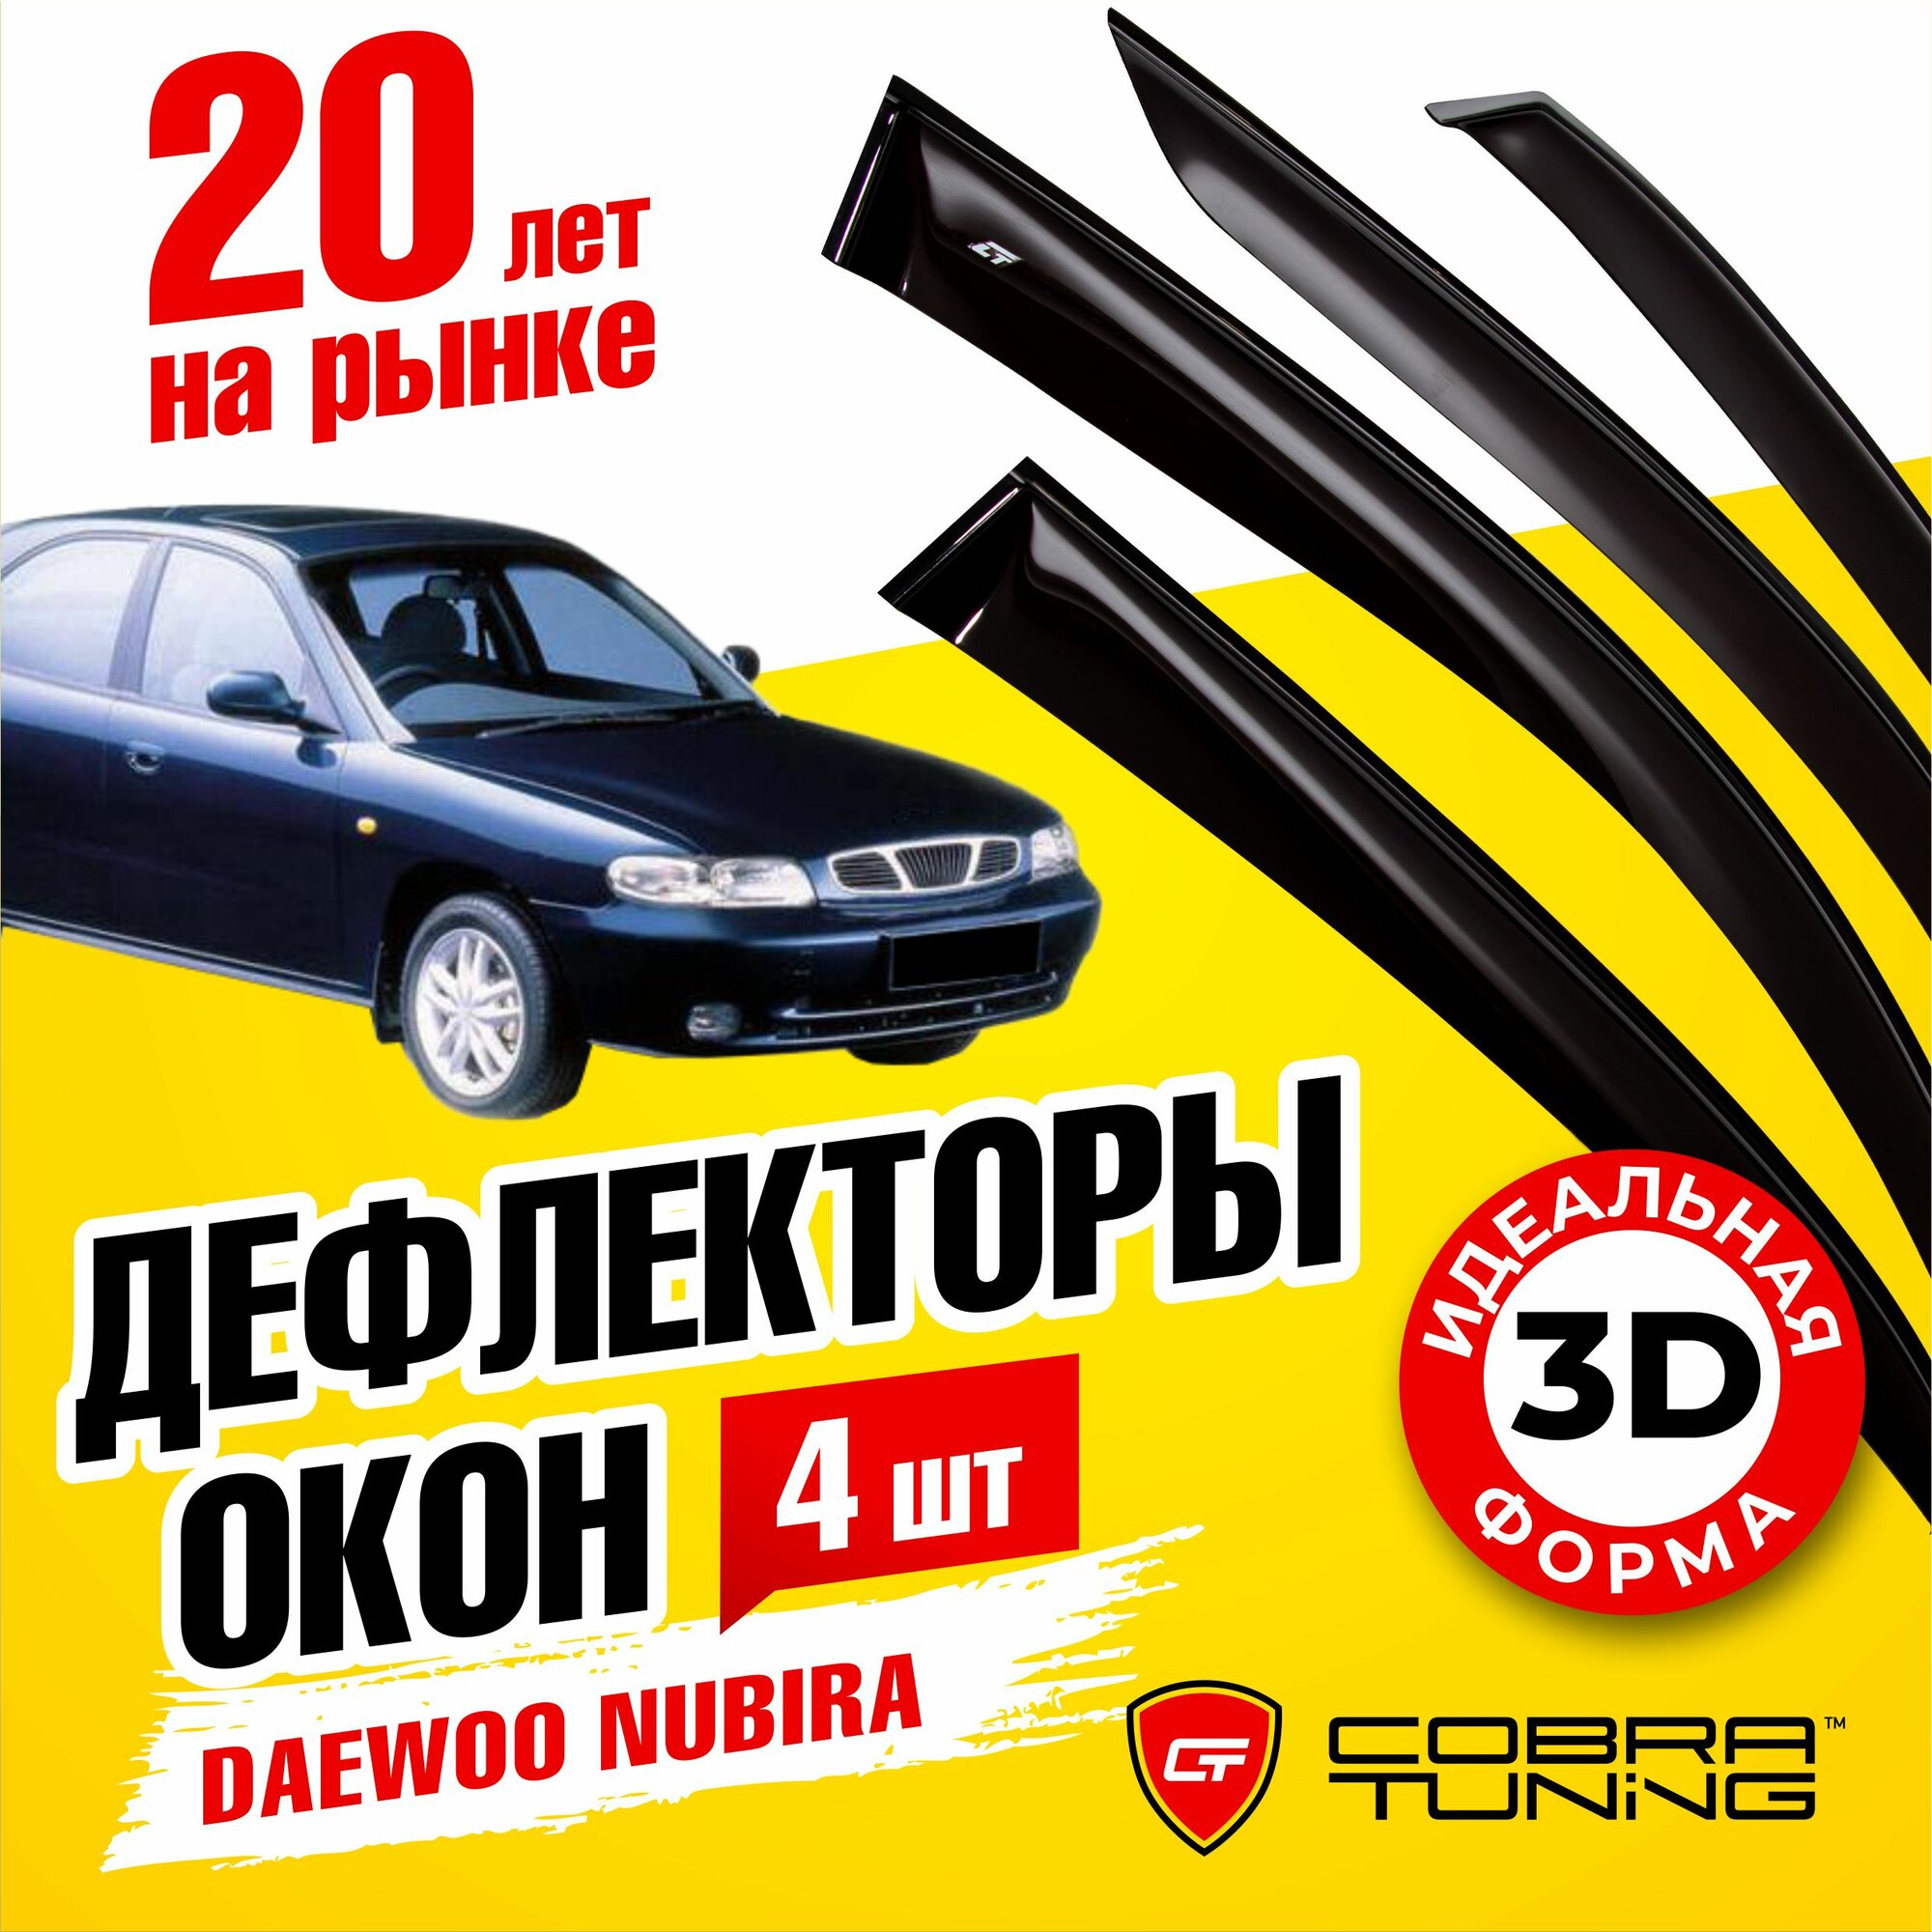 Дефлекторы боковых стекол Cobra Tuning на Daewoo Nubira Sd Sedan 1997-2003 - Ветровики боковых окон для Дэу Нубира Сд Седан 1997-2003